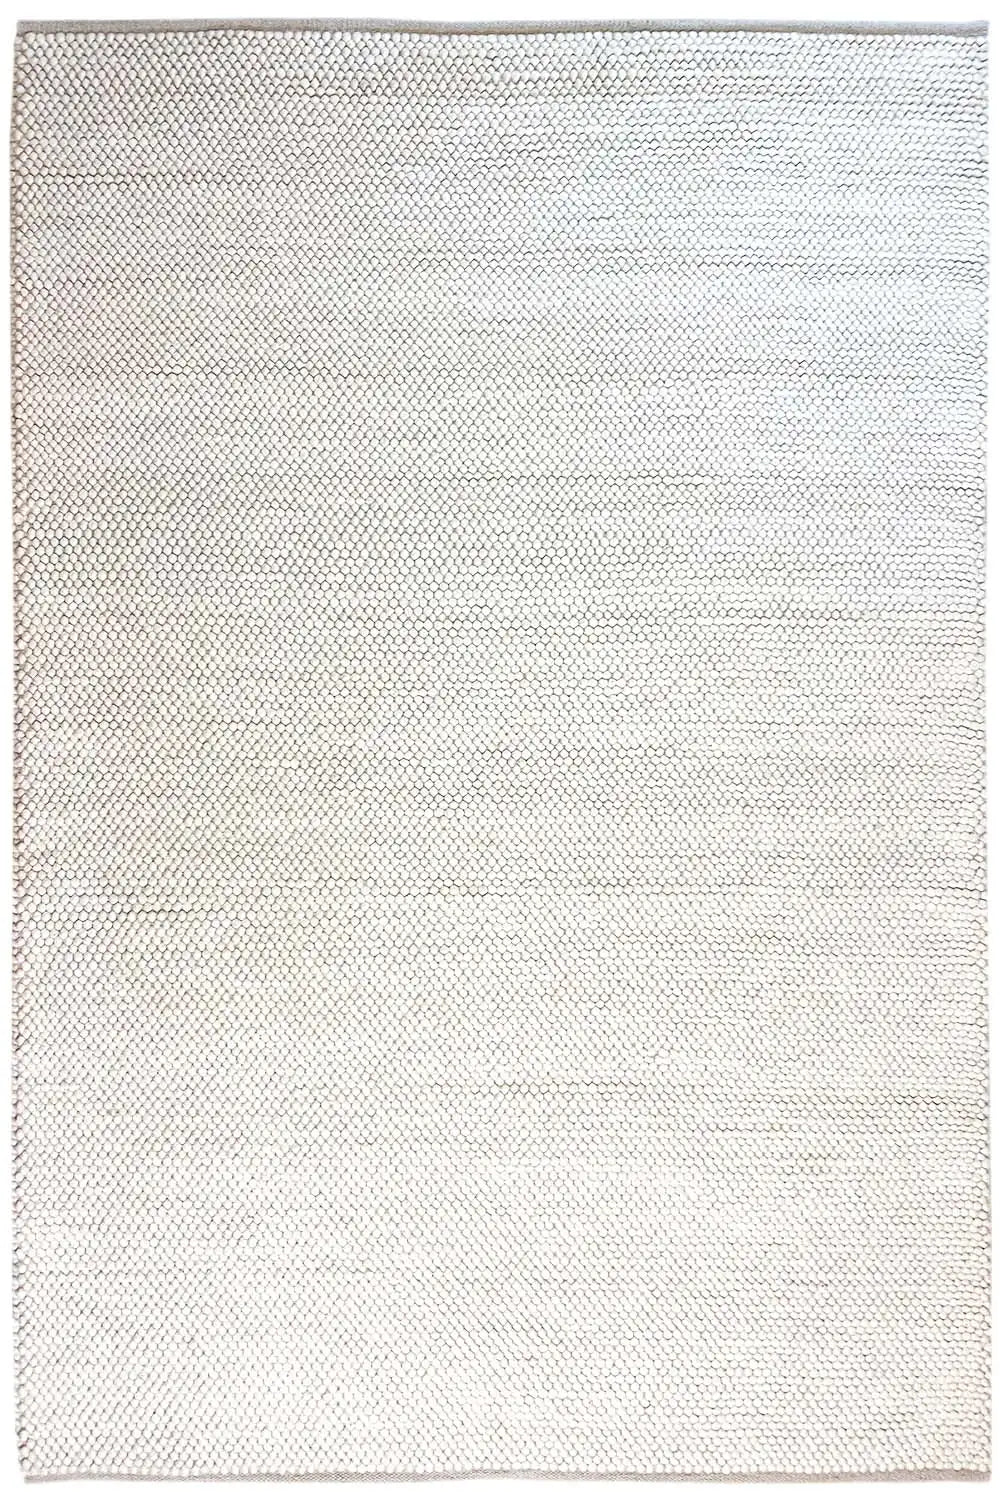 Loom - Loop (242x170cm) - German Carpet Shop